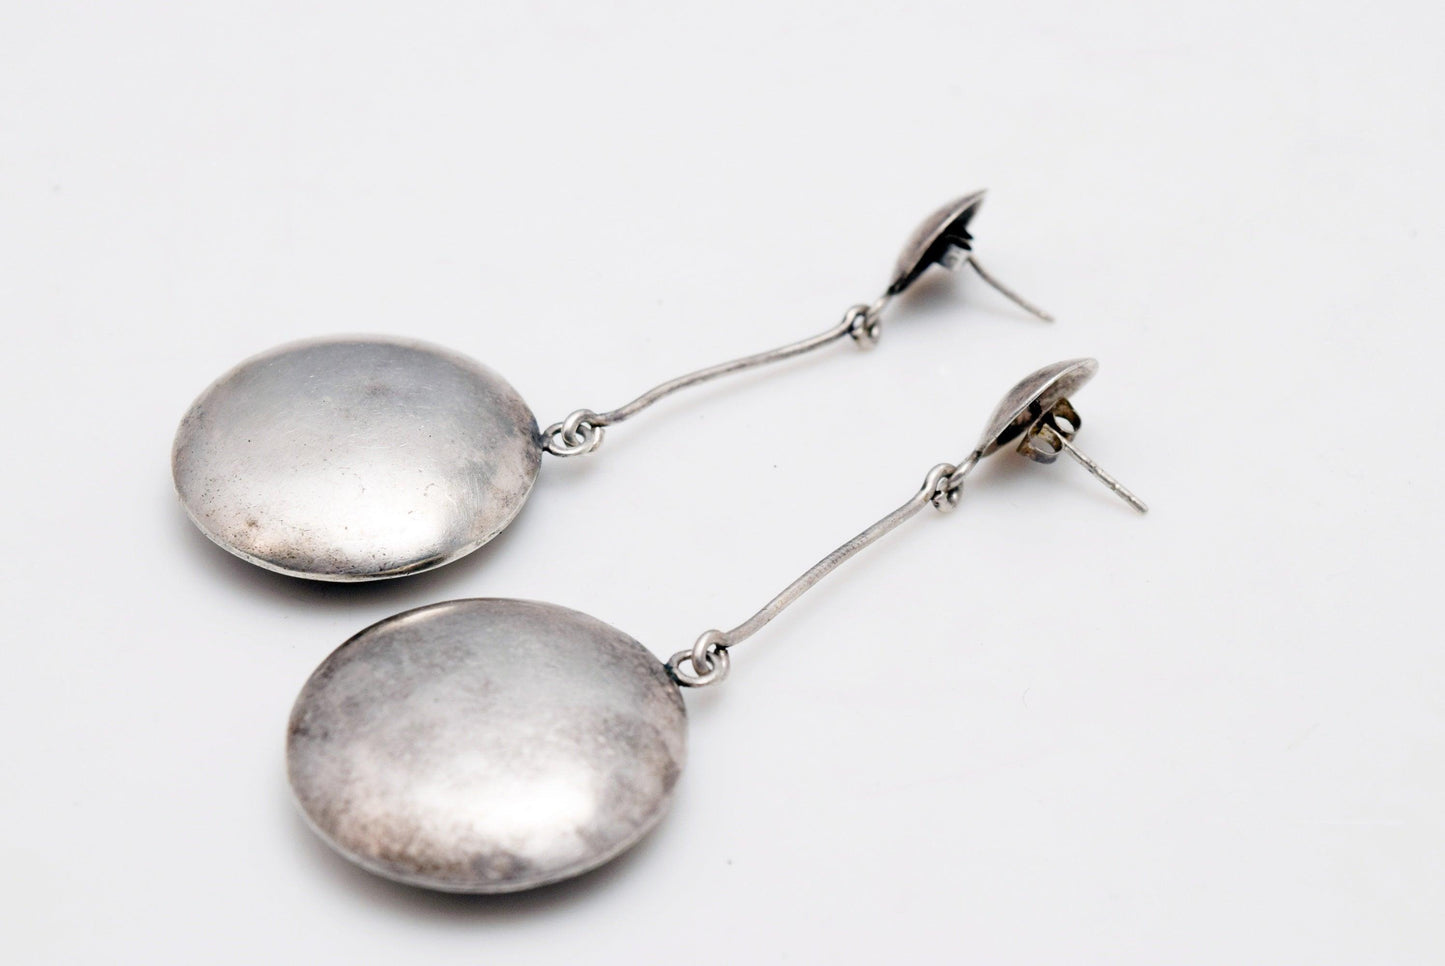 Vintage Sterling Silver Pendulum Earrings from Bali - Anteeka